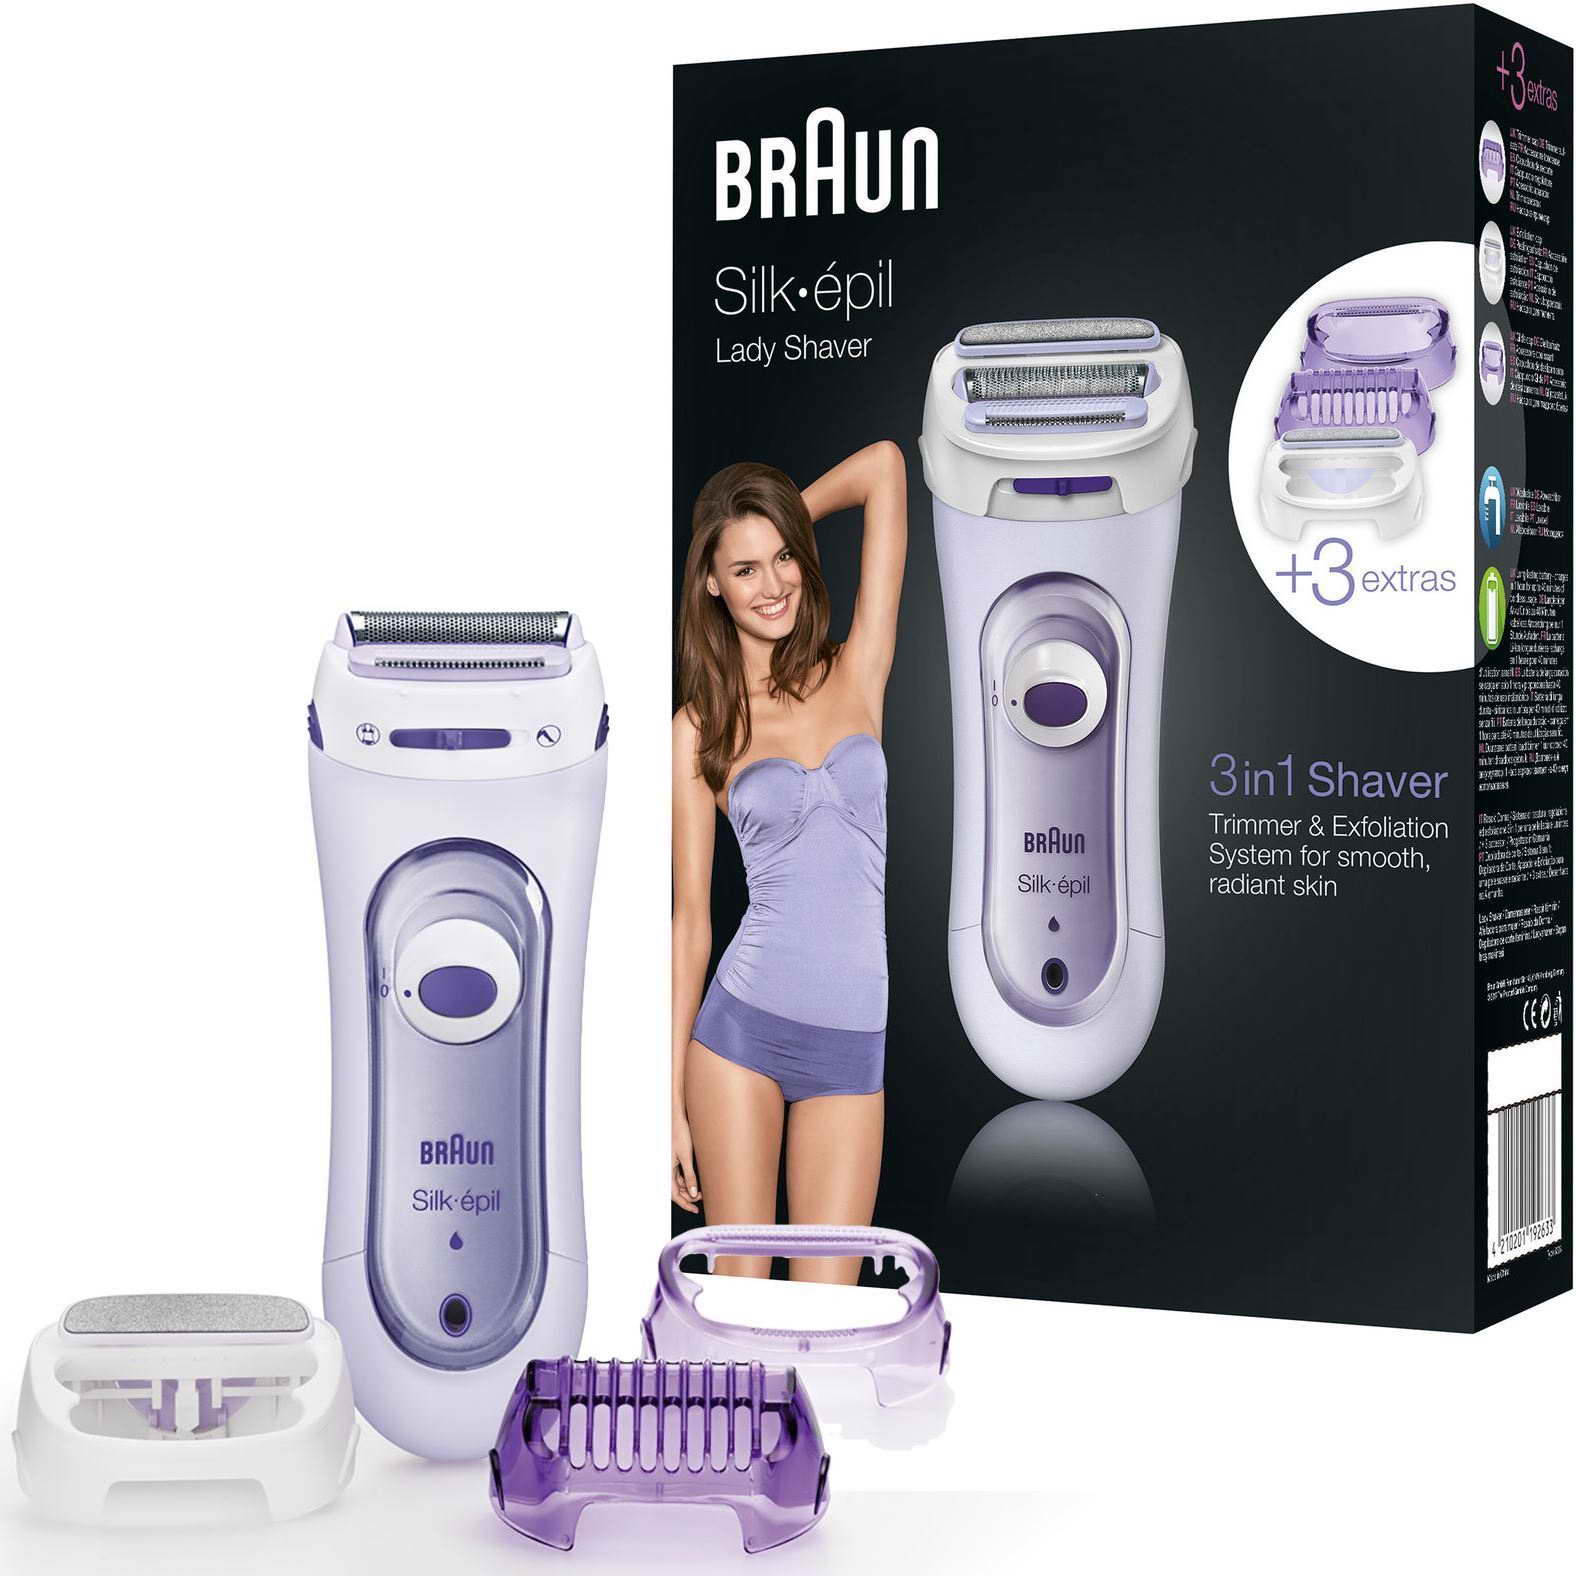 braun women's trimmer